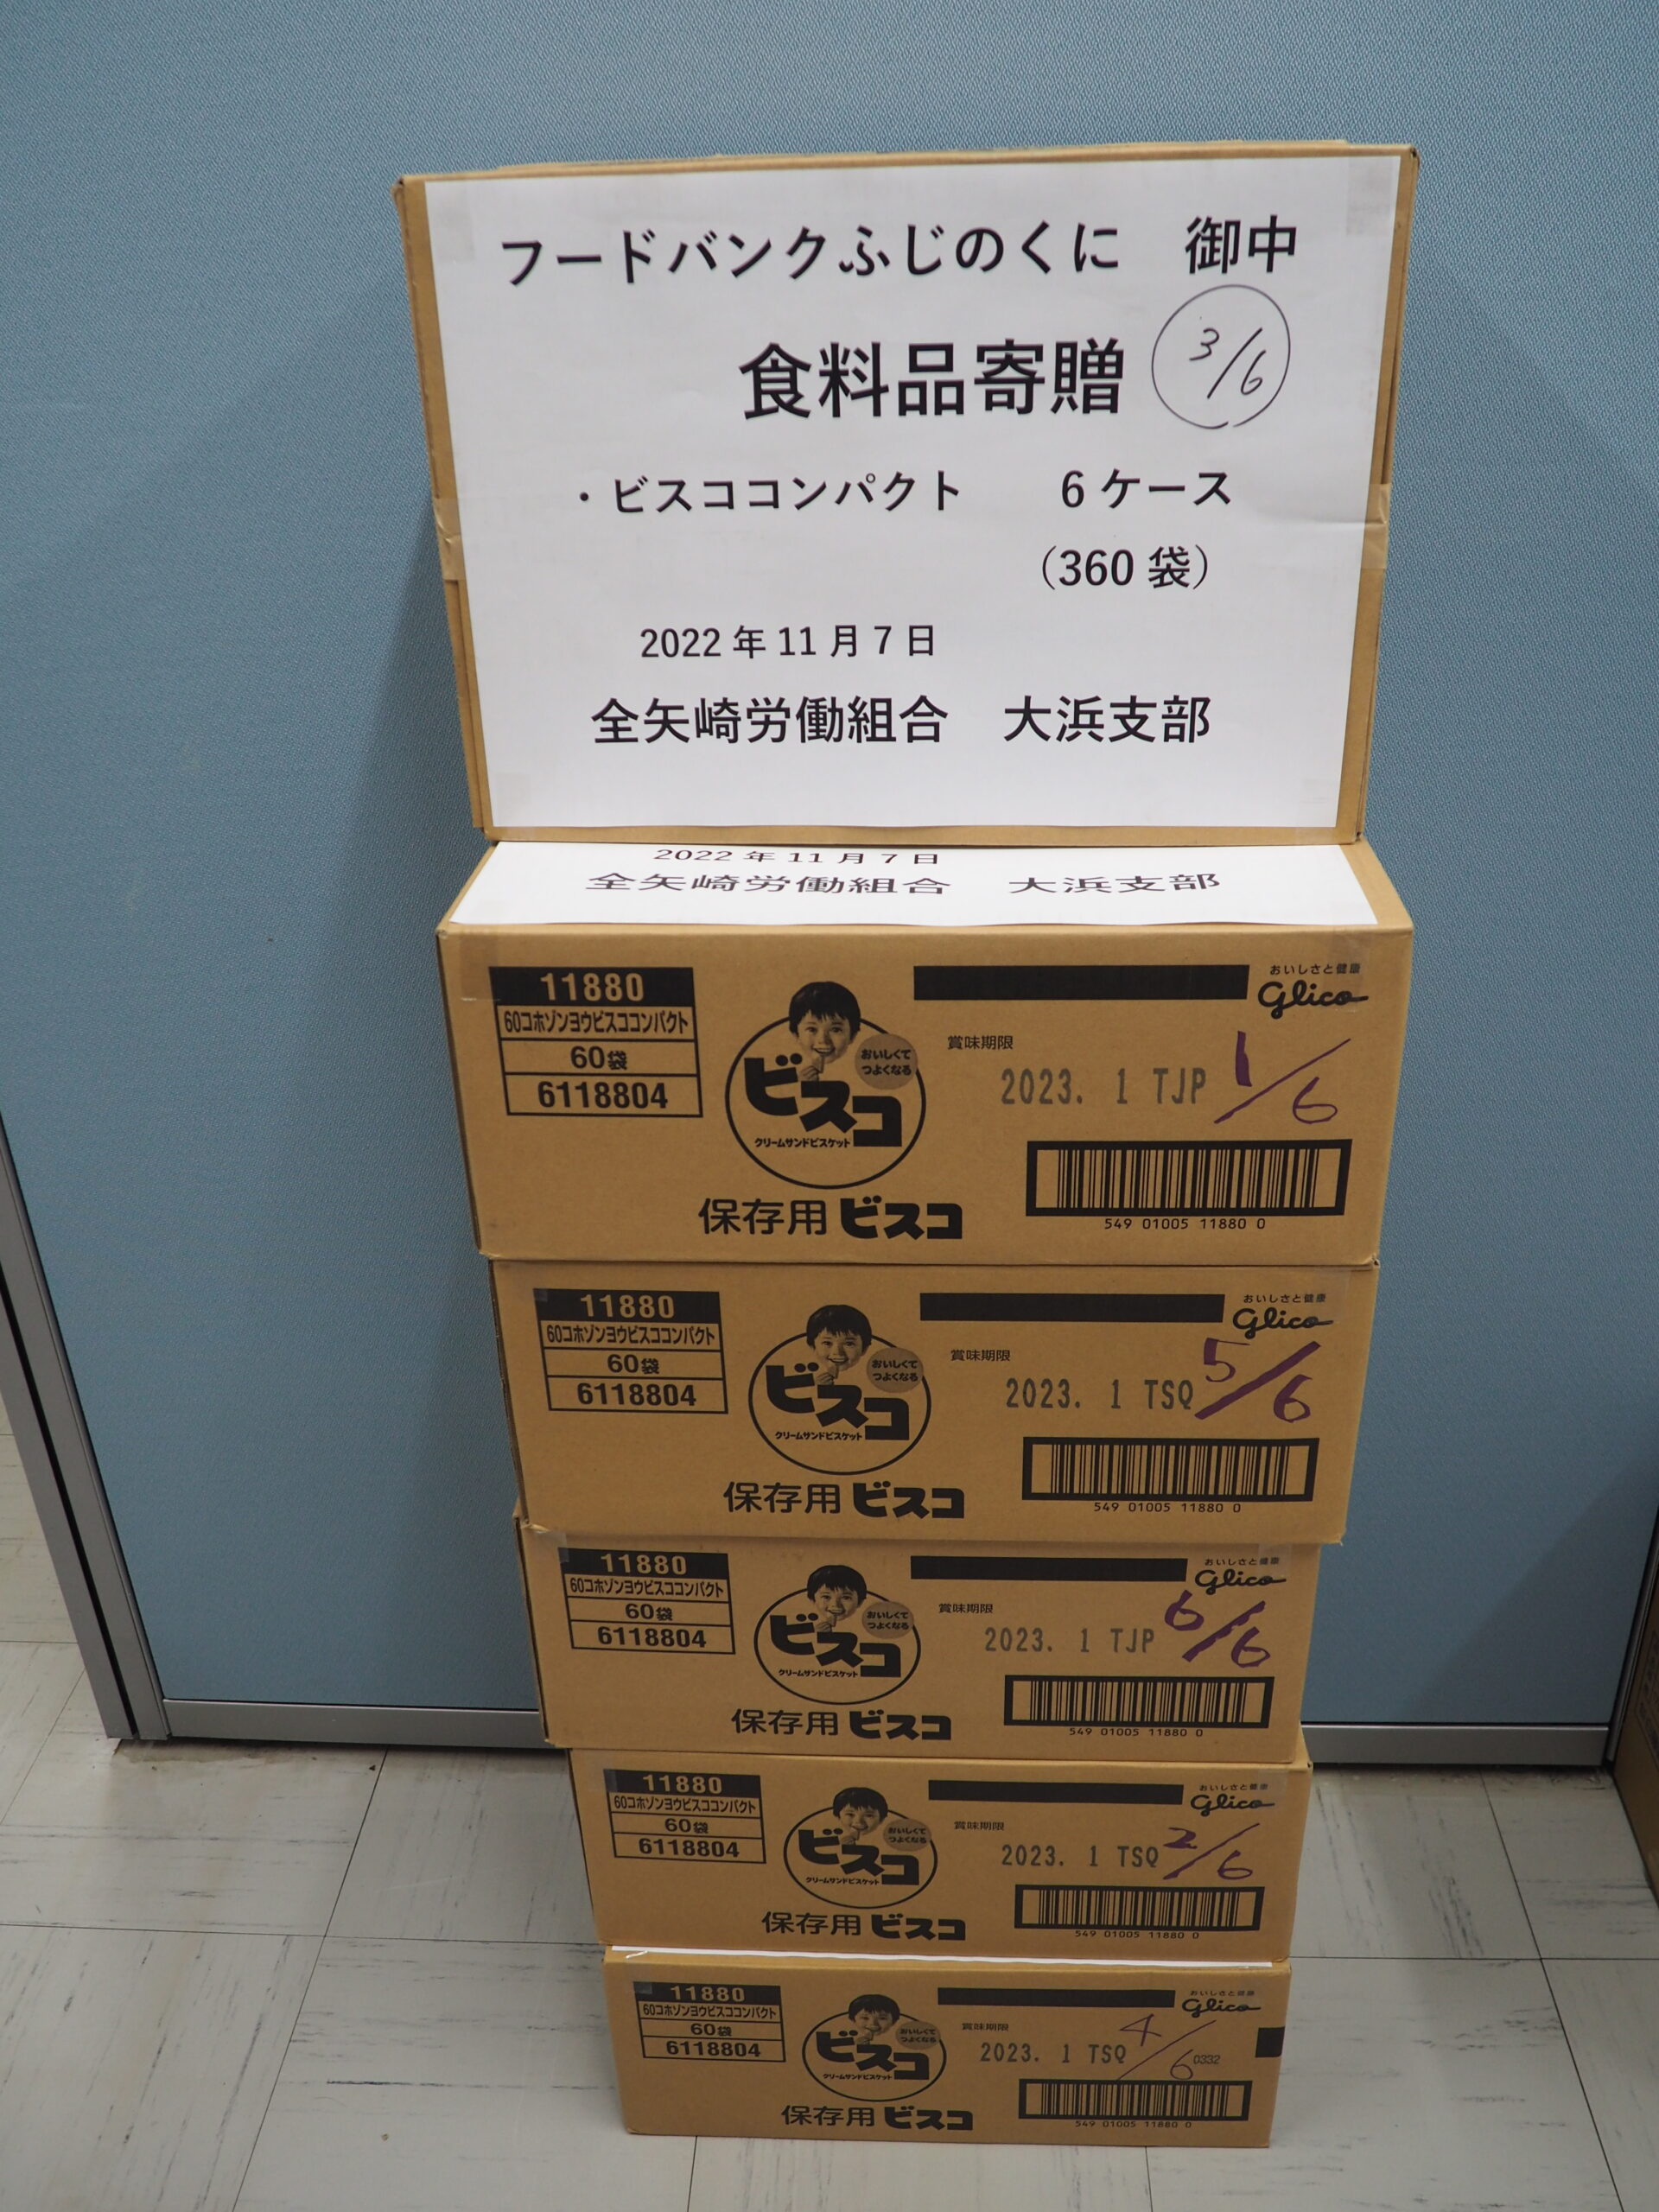 全矢崎労働組合大浜支部様から食品を提供いただきました。